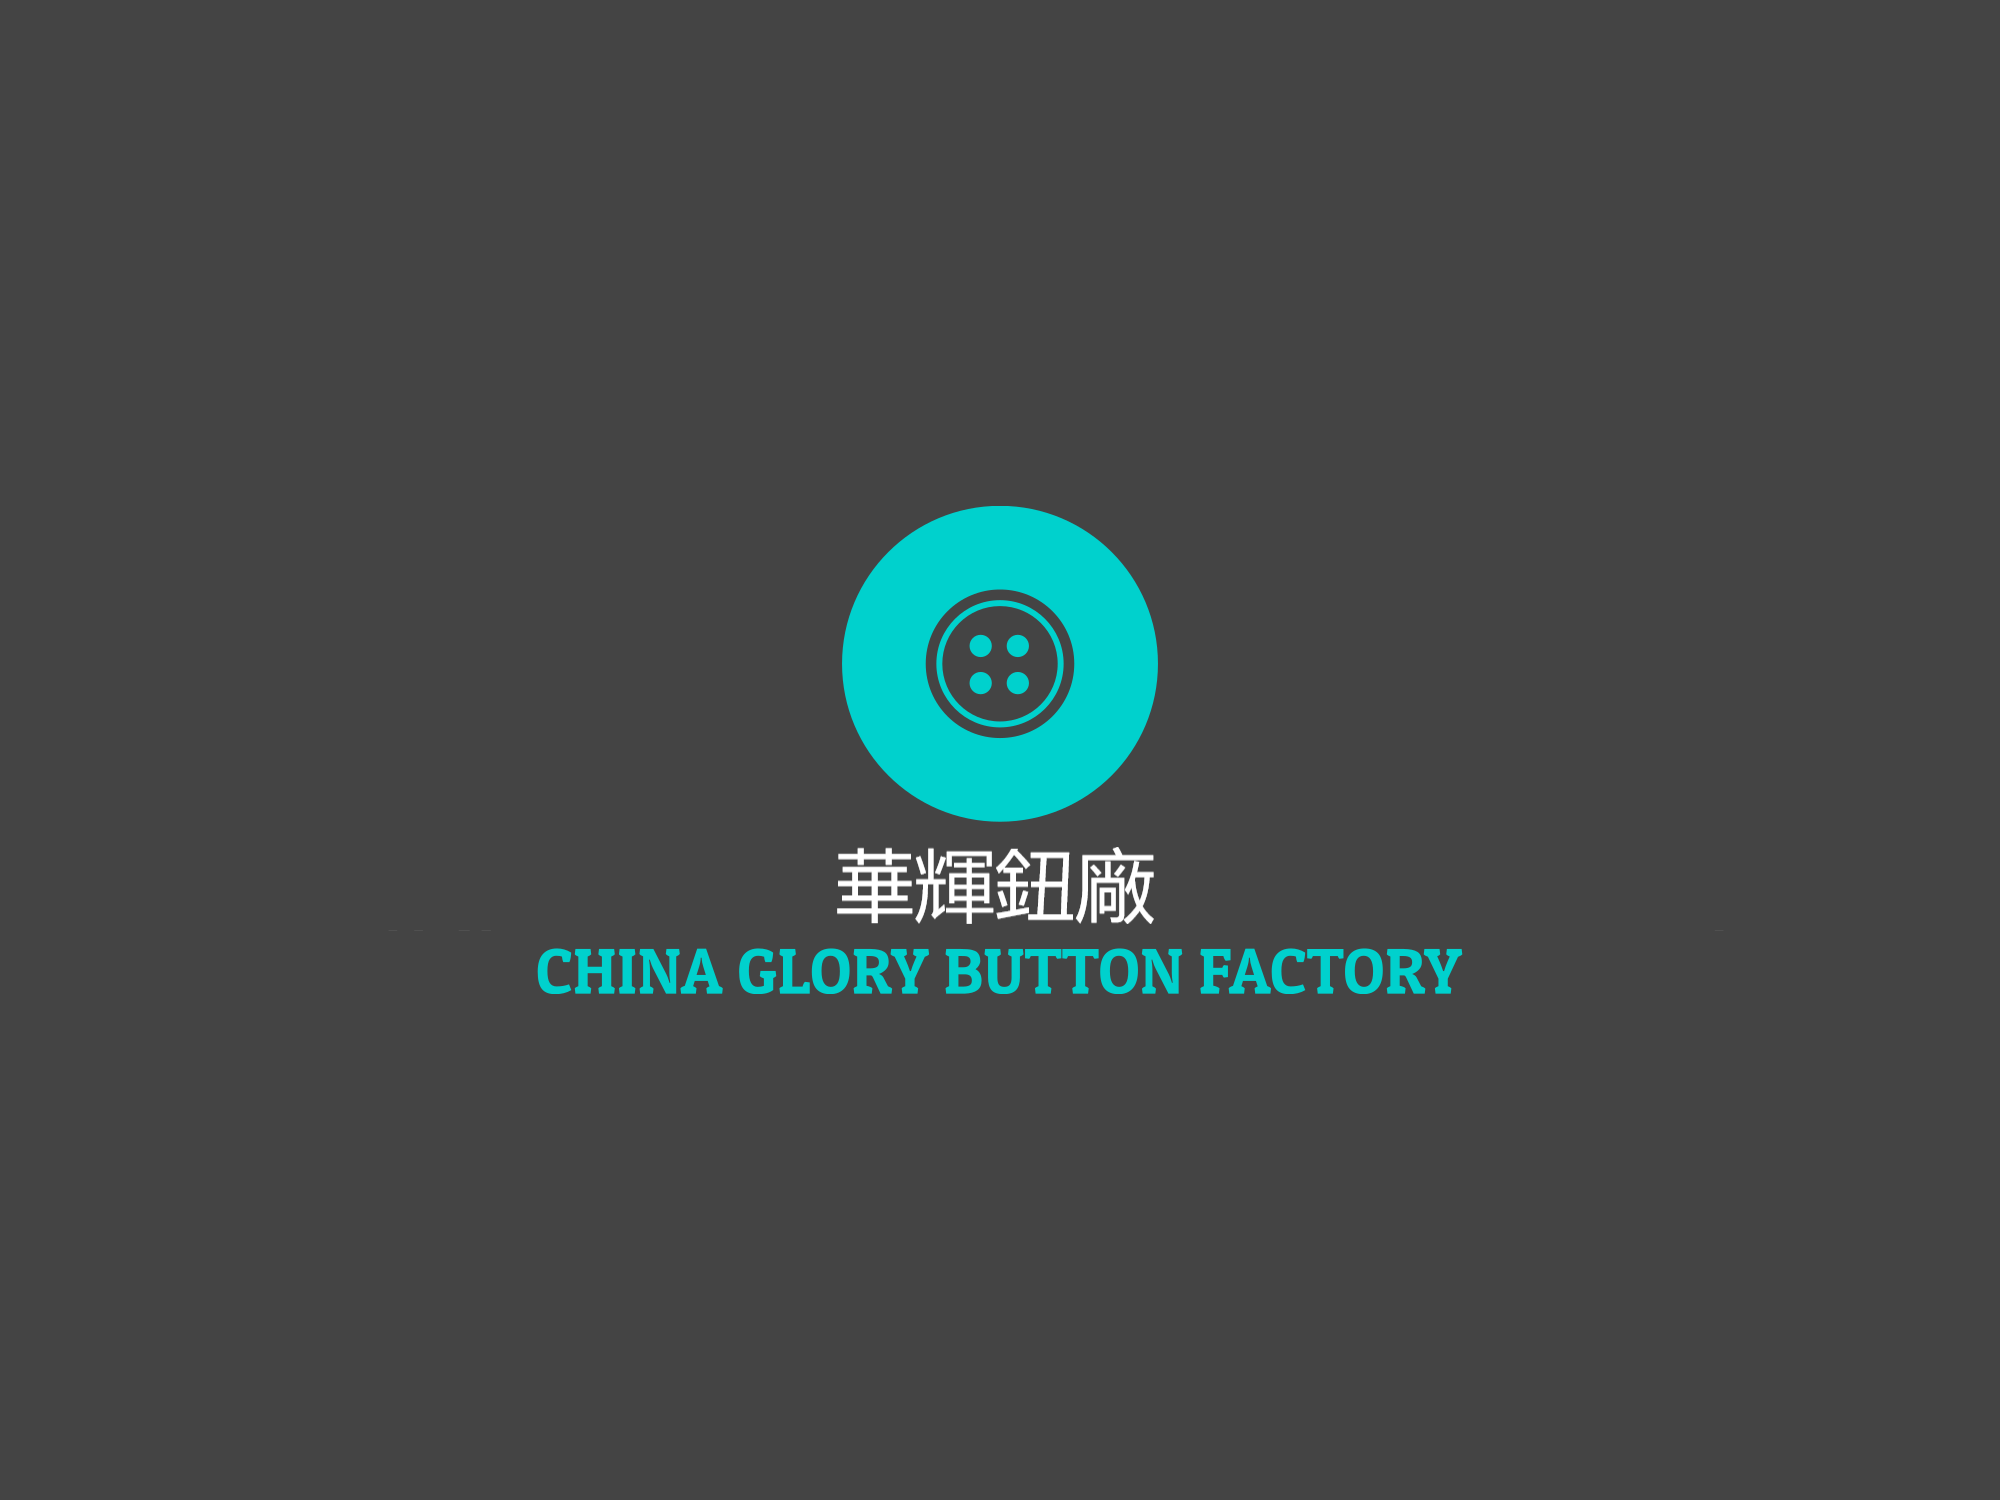 CHINA GLORY BUTTON FACTORY